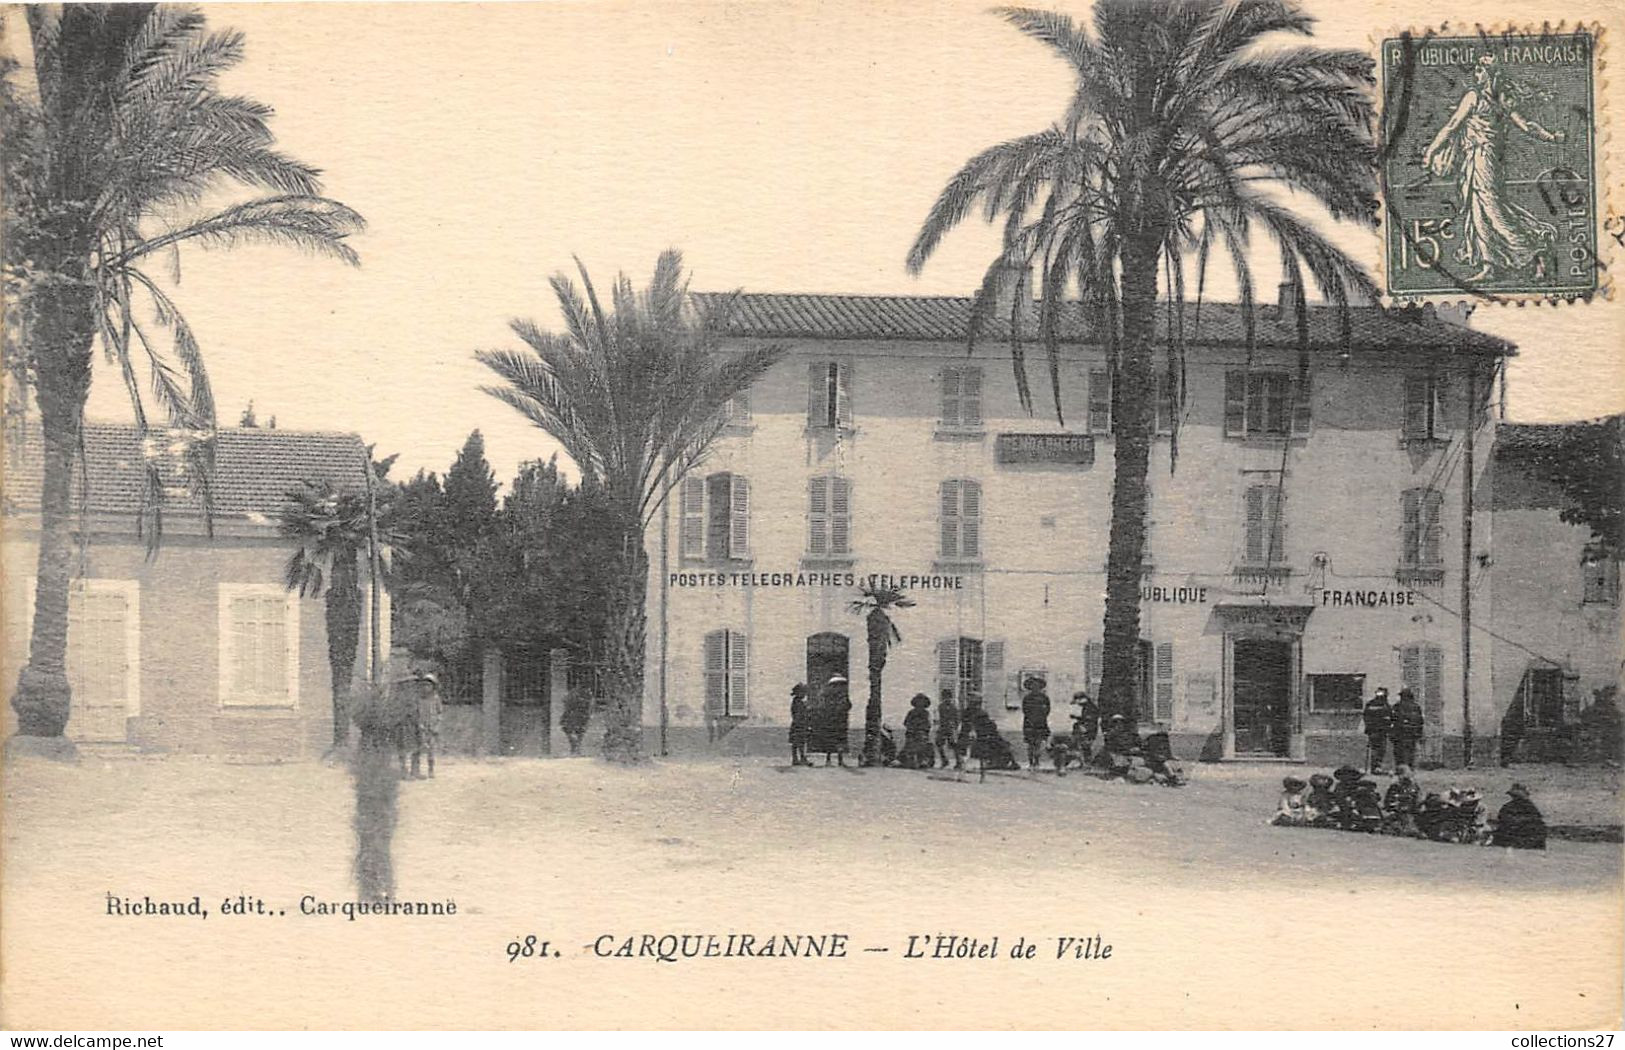 83-CARQUEIRANNE-L'HÔTEL DE VILLE - Carqueiranne